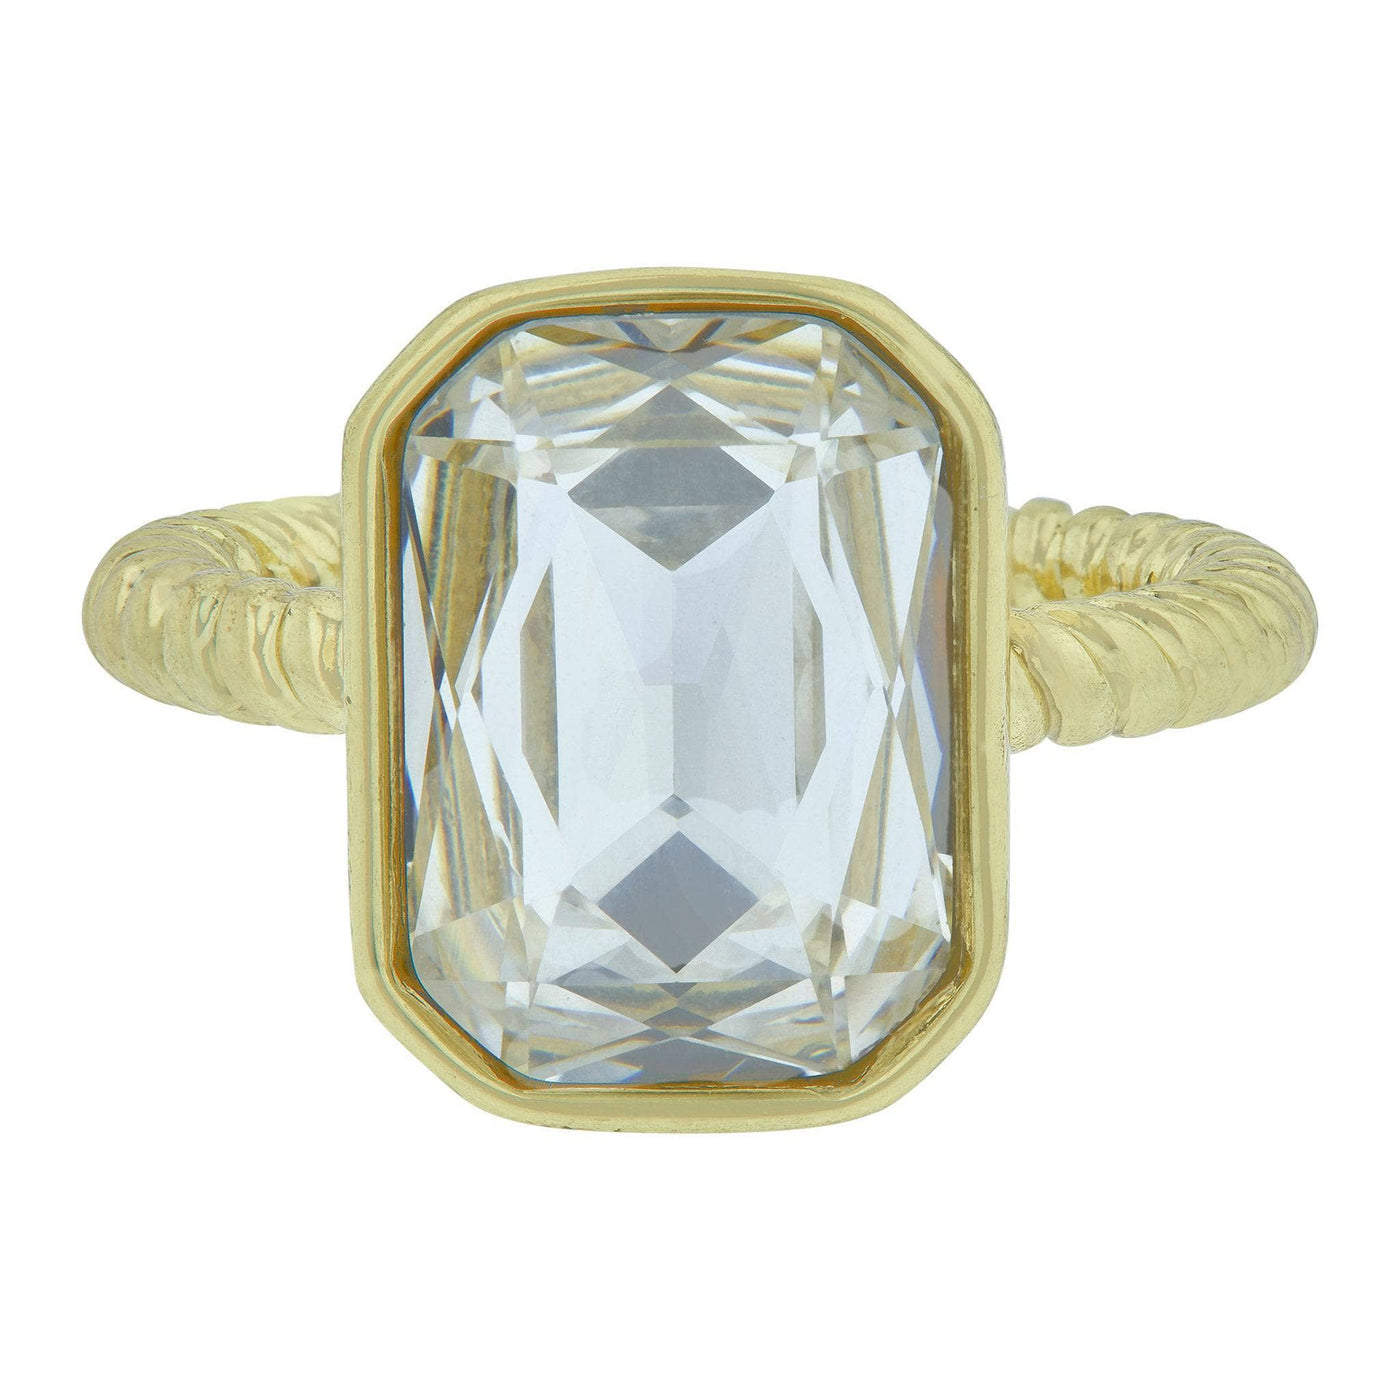 Heidi Daus®"Ring It Up" Crystal Rectangle Ring